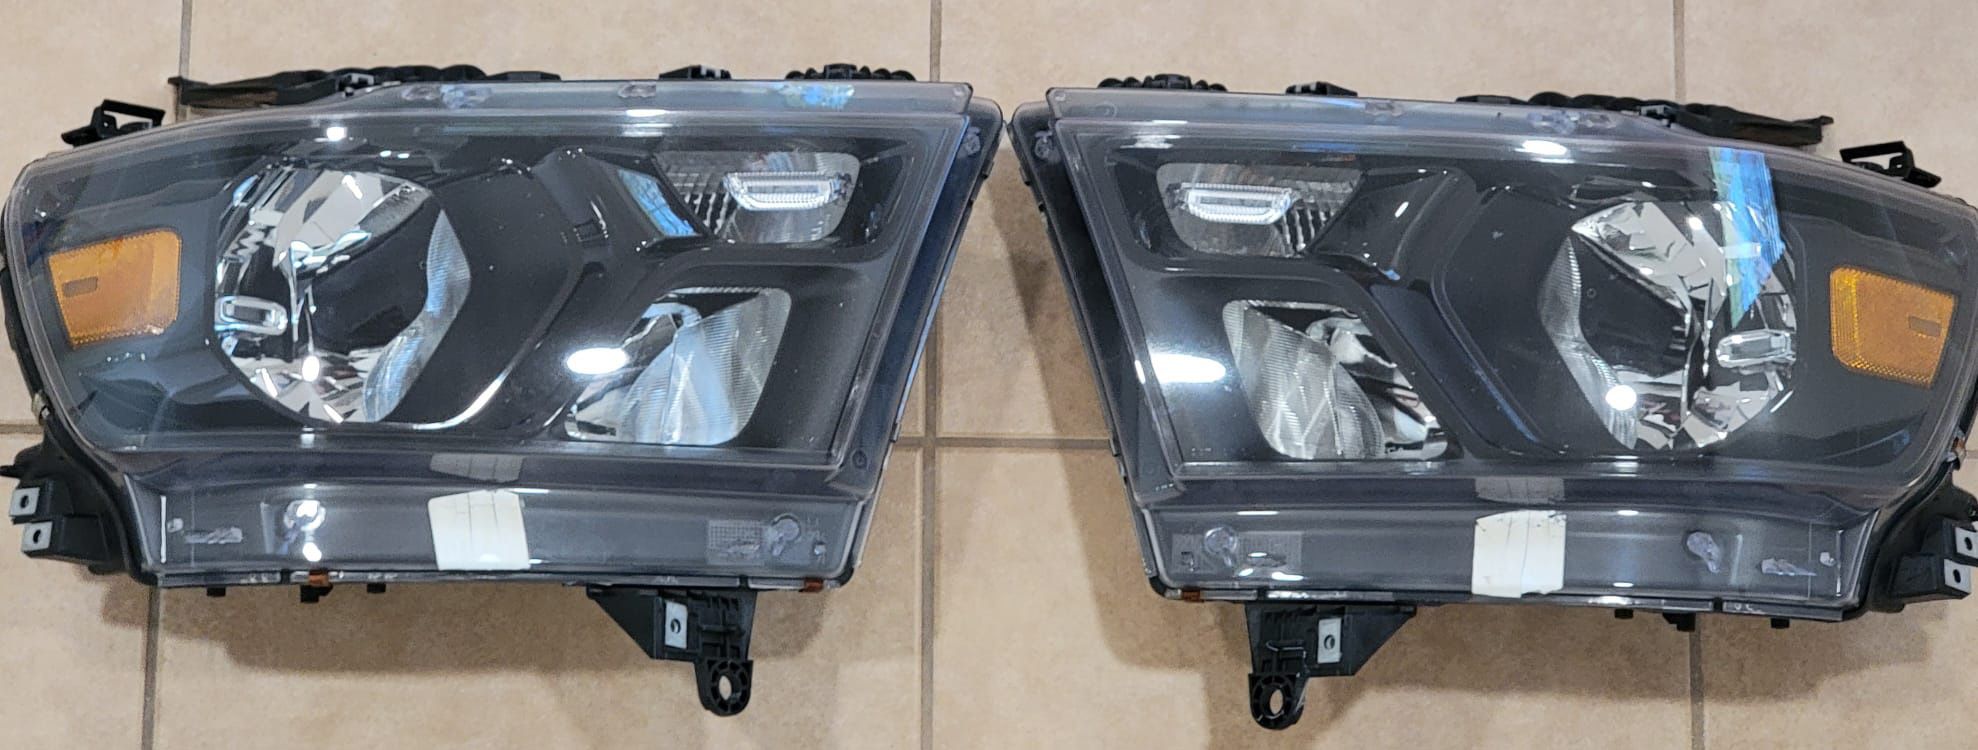 2 Halogen Headlight Lamps for 2019 Dodge Ram 1500u